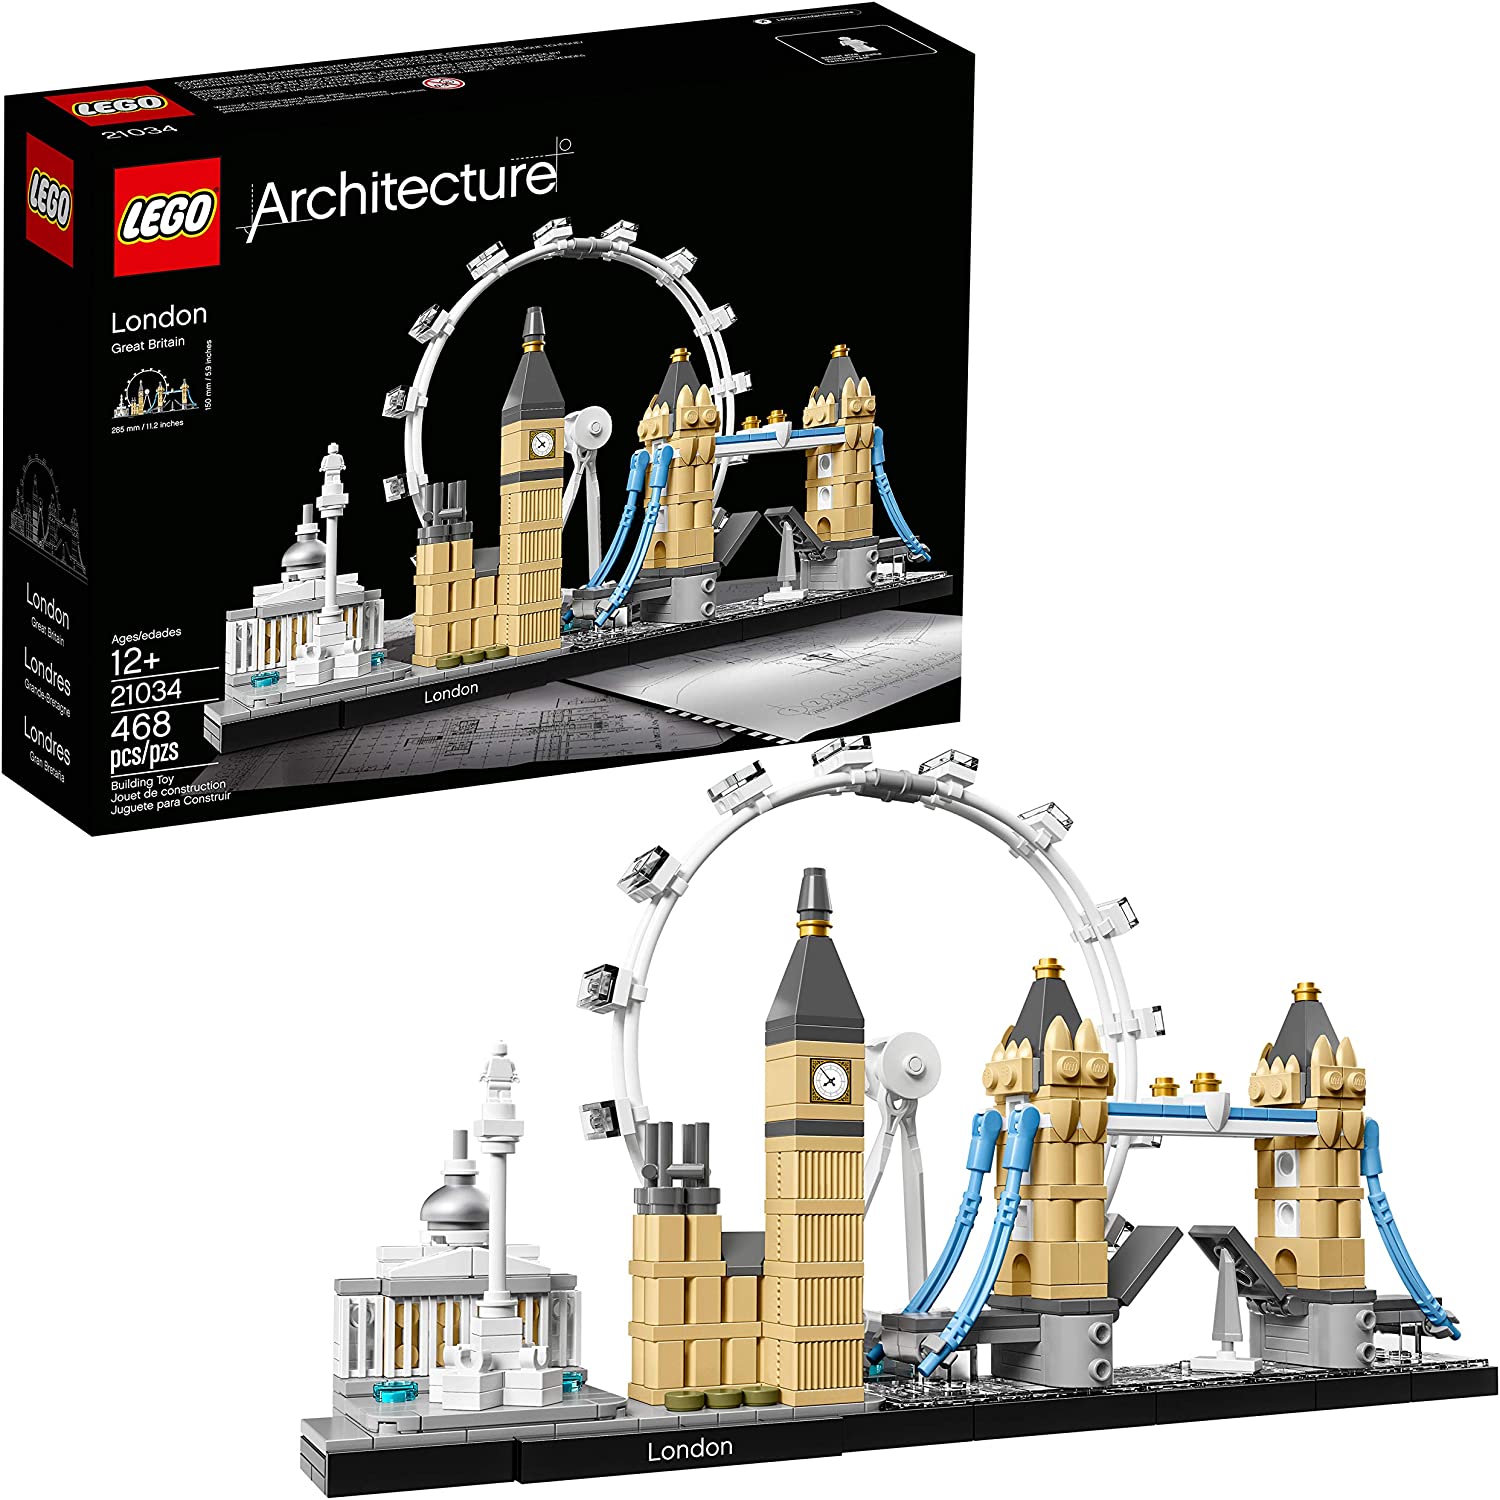 London Skyline Lego kit